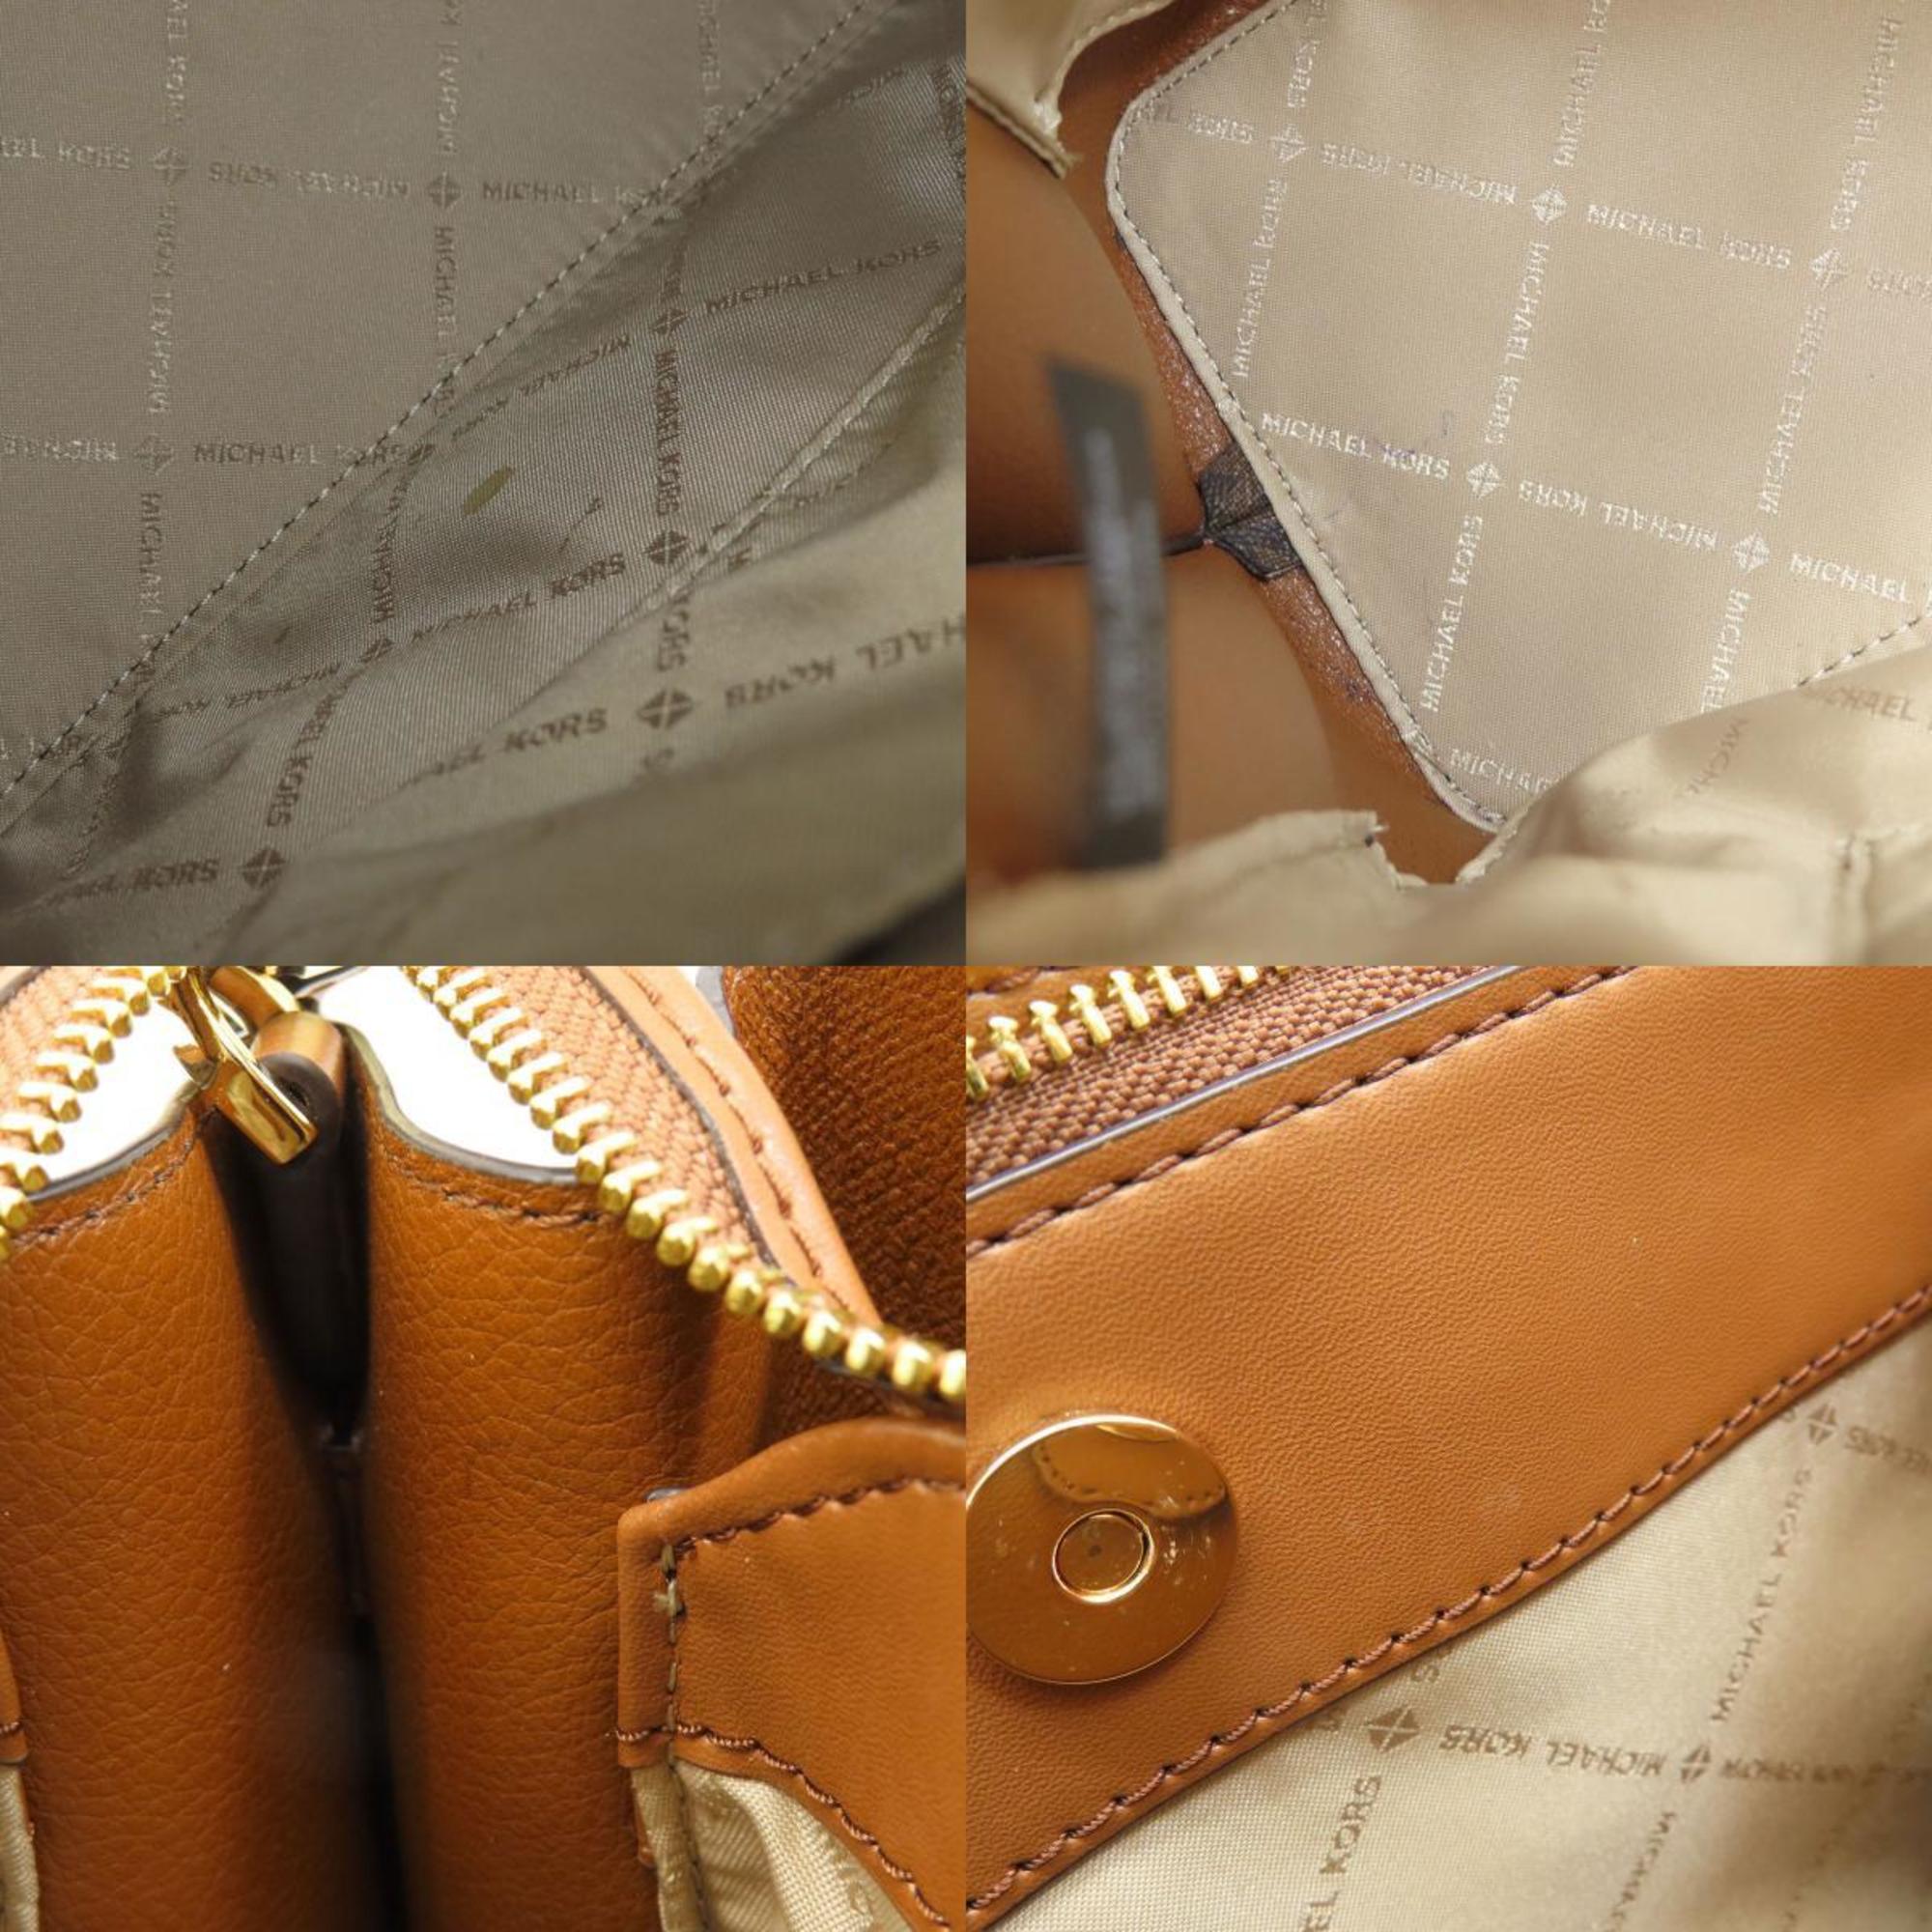 Michael Kors Emilia Tote Bag PVC Women's